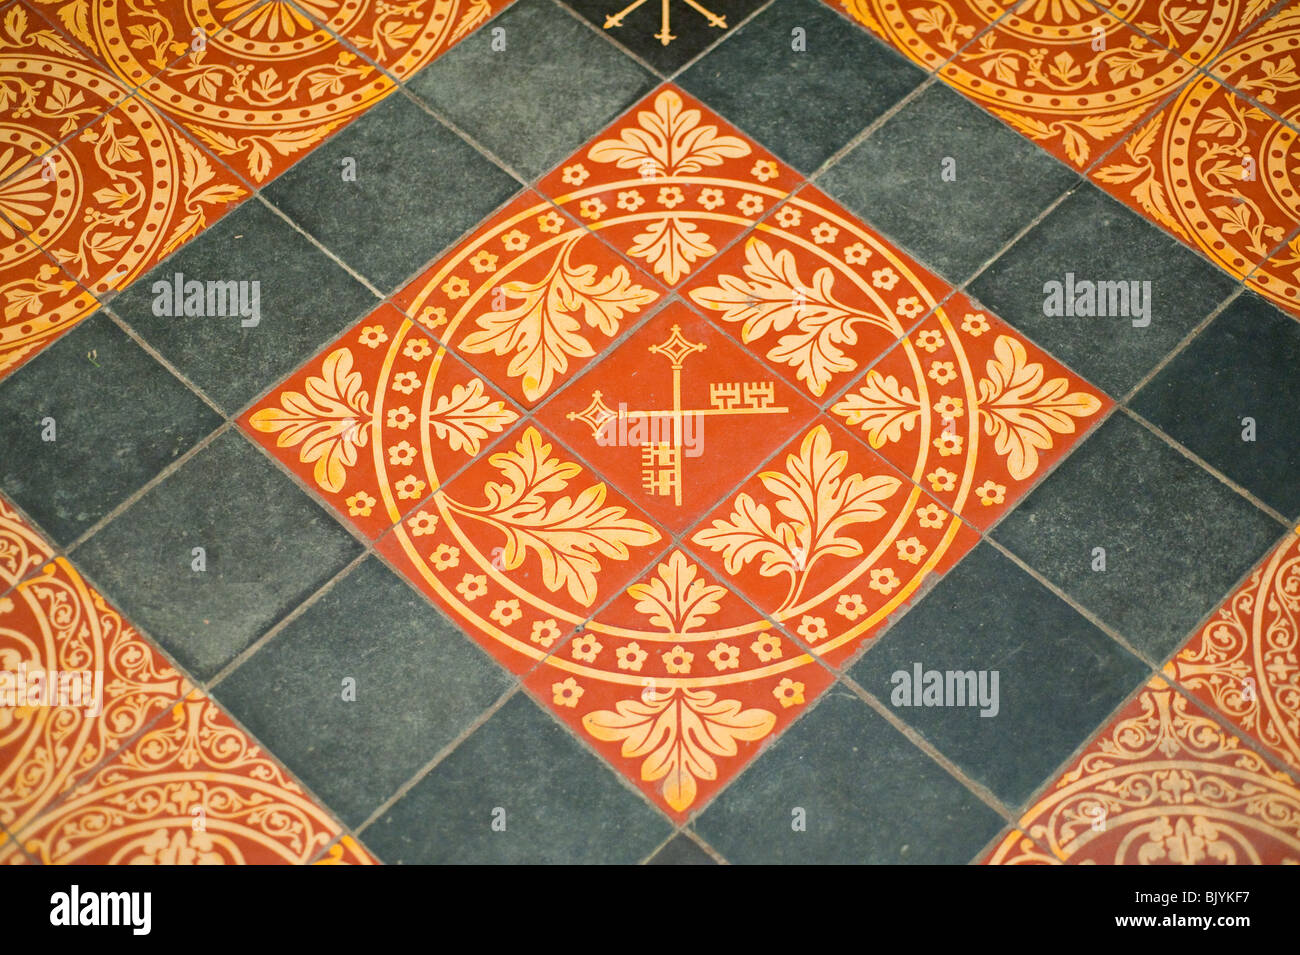 Cross keys pattern on floor tiles York UK Stock Photo